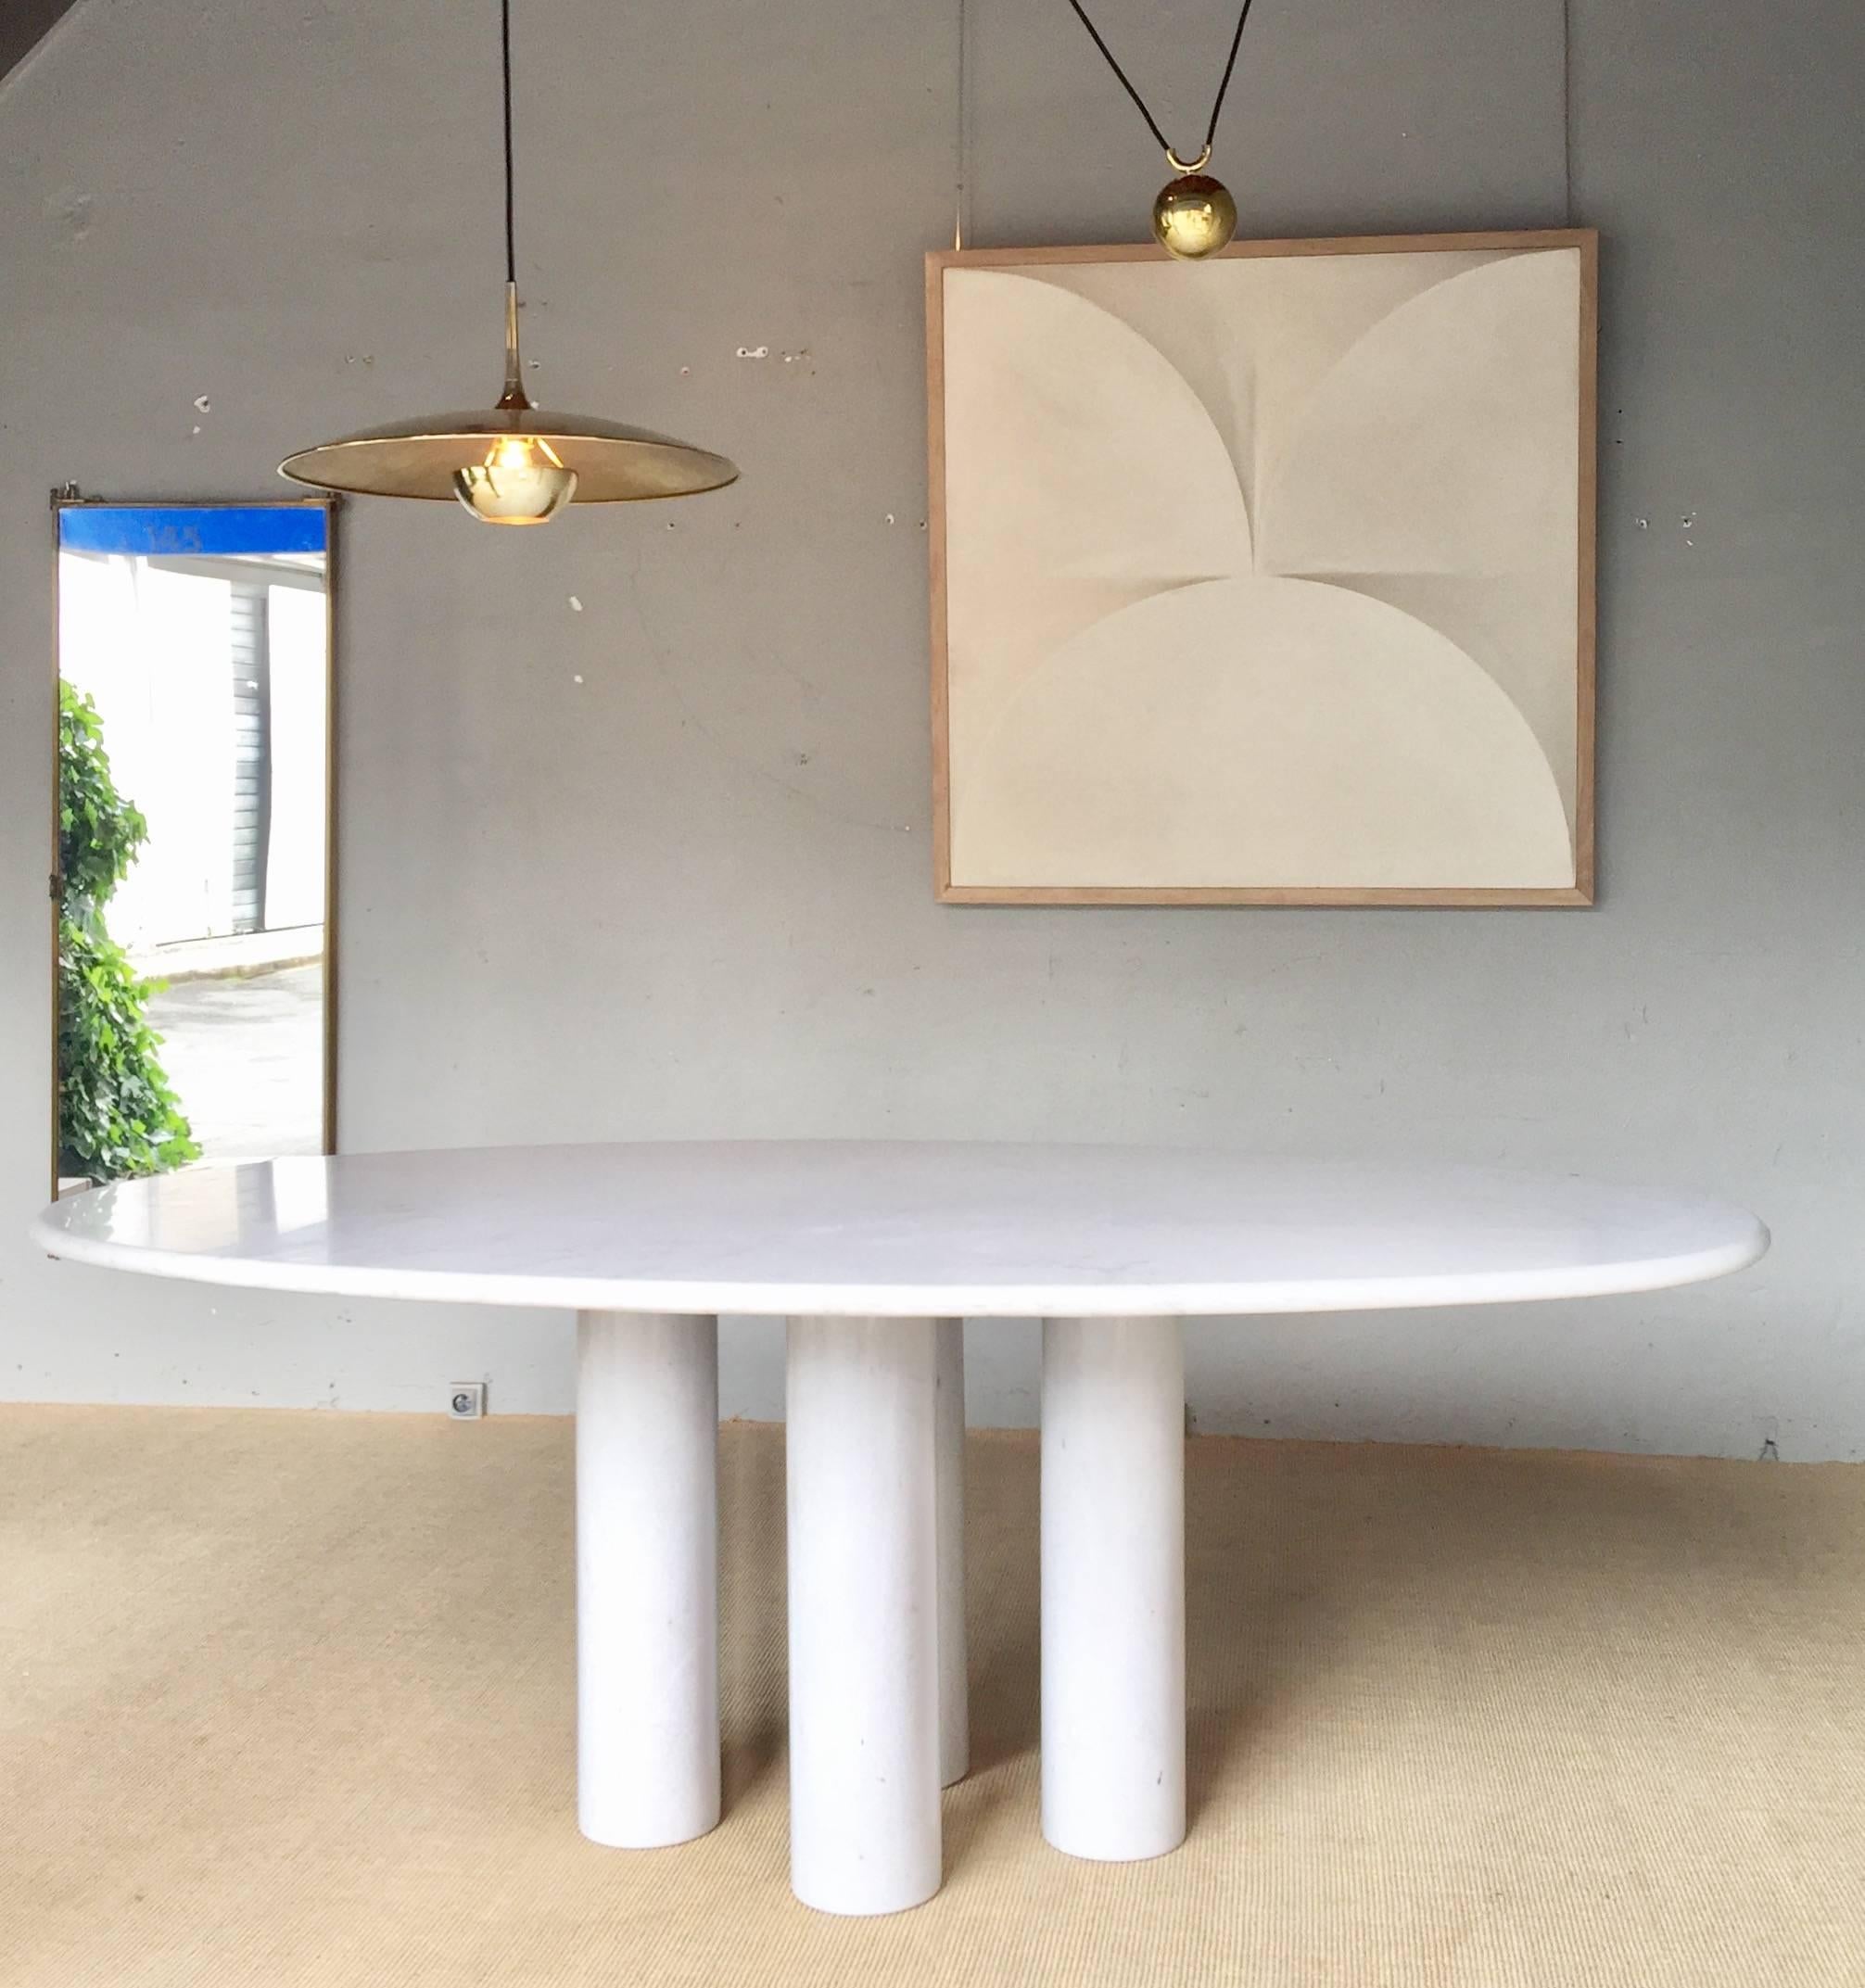 Carrara marble table by Mario Bellini, Cassina edition, Colonnato model.